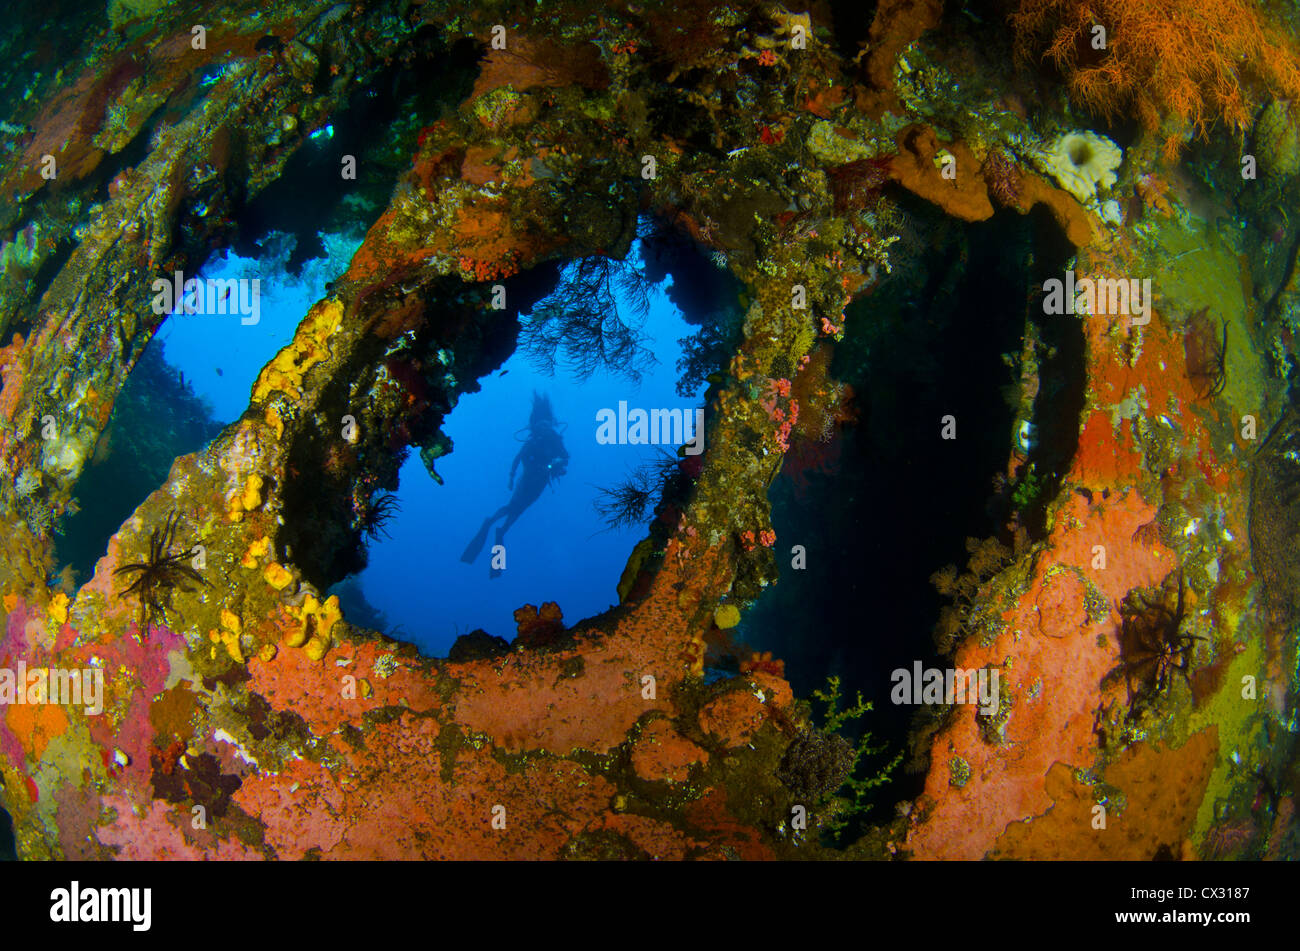 Unterwasser Meerestiere, Bali Indonesien, Scuba, Tauchen, Taucher, weibliche Taucher, Kontur, Wrack, Wasser, blau, Wasser, Meer, Meer. Stockfoto